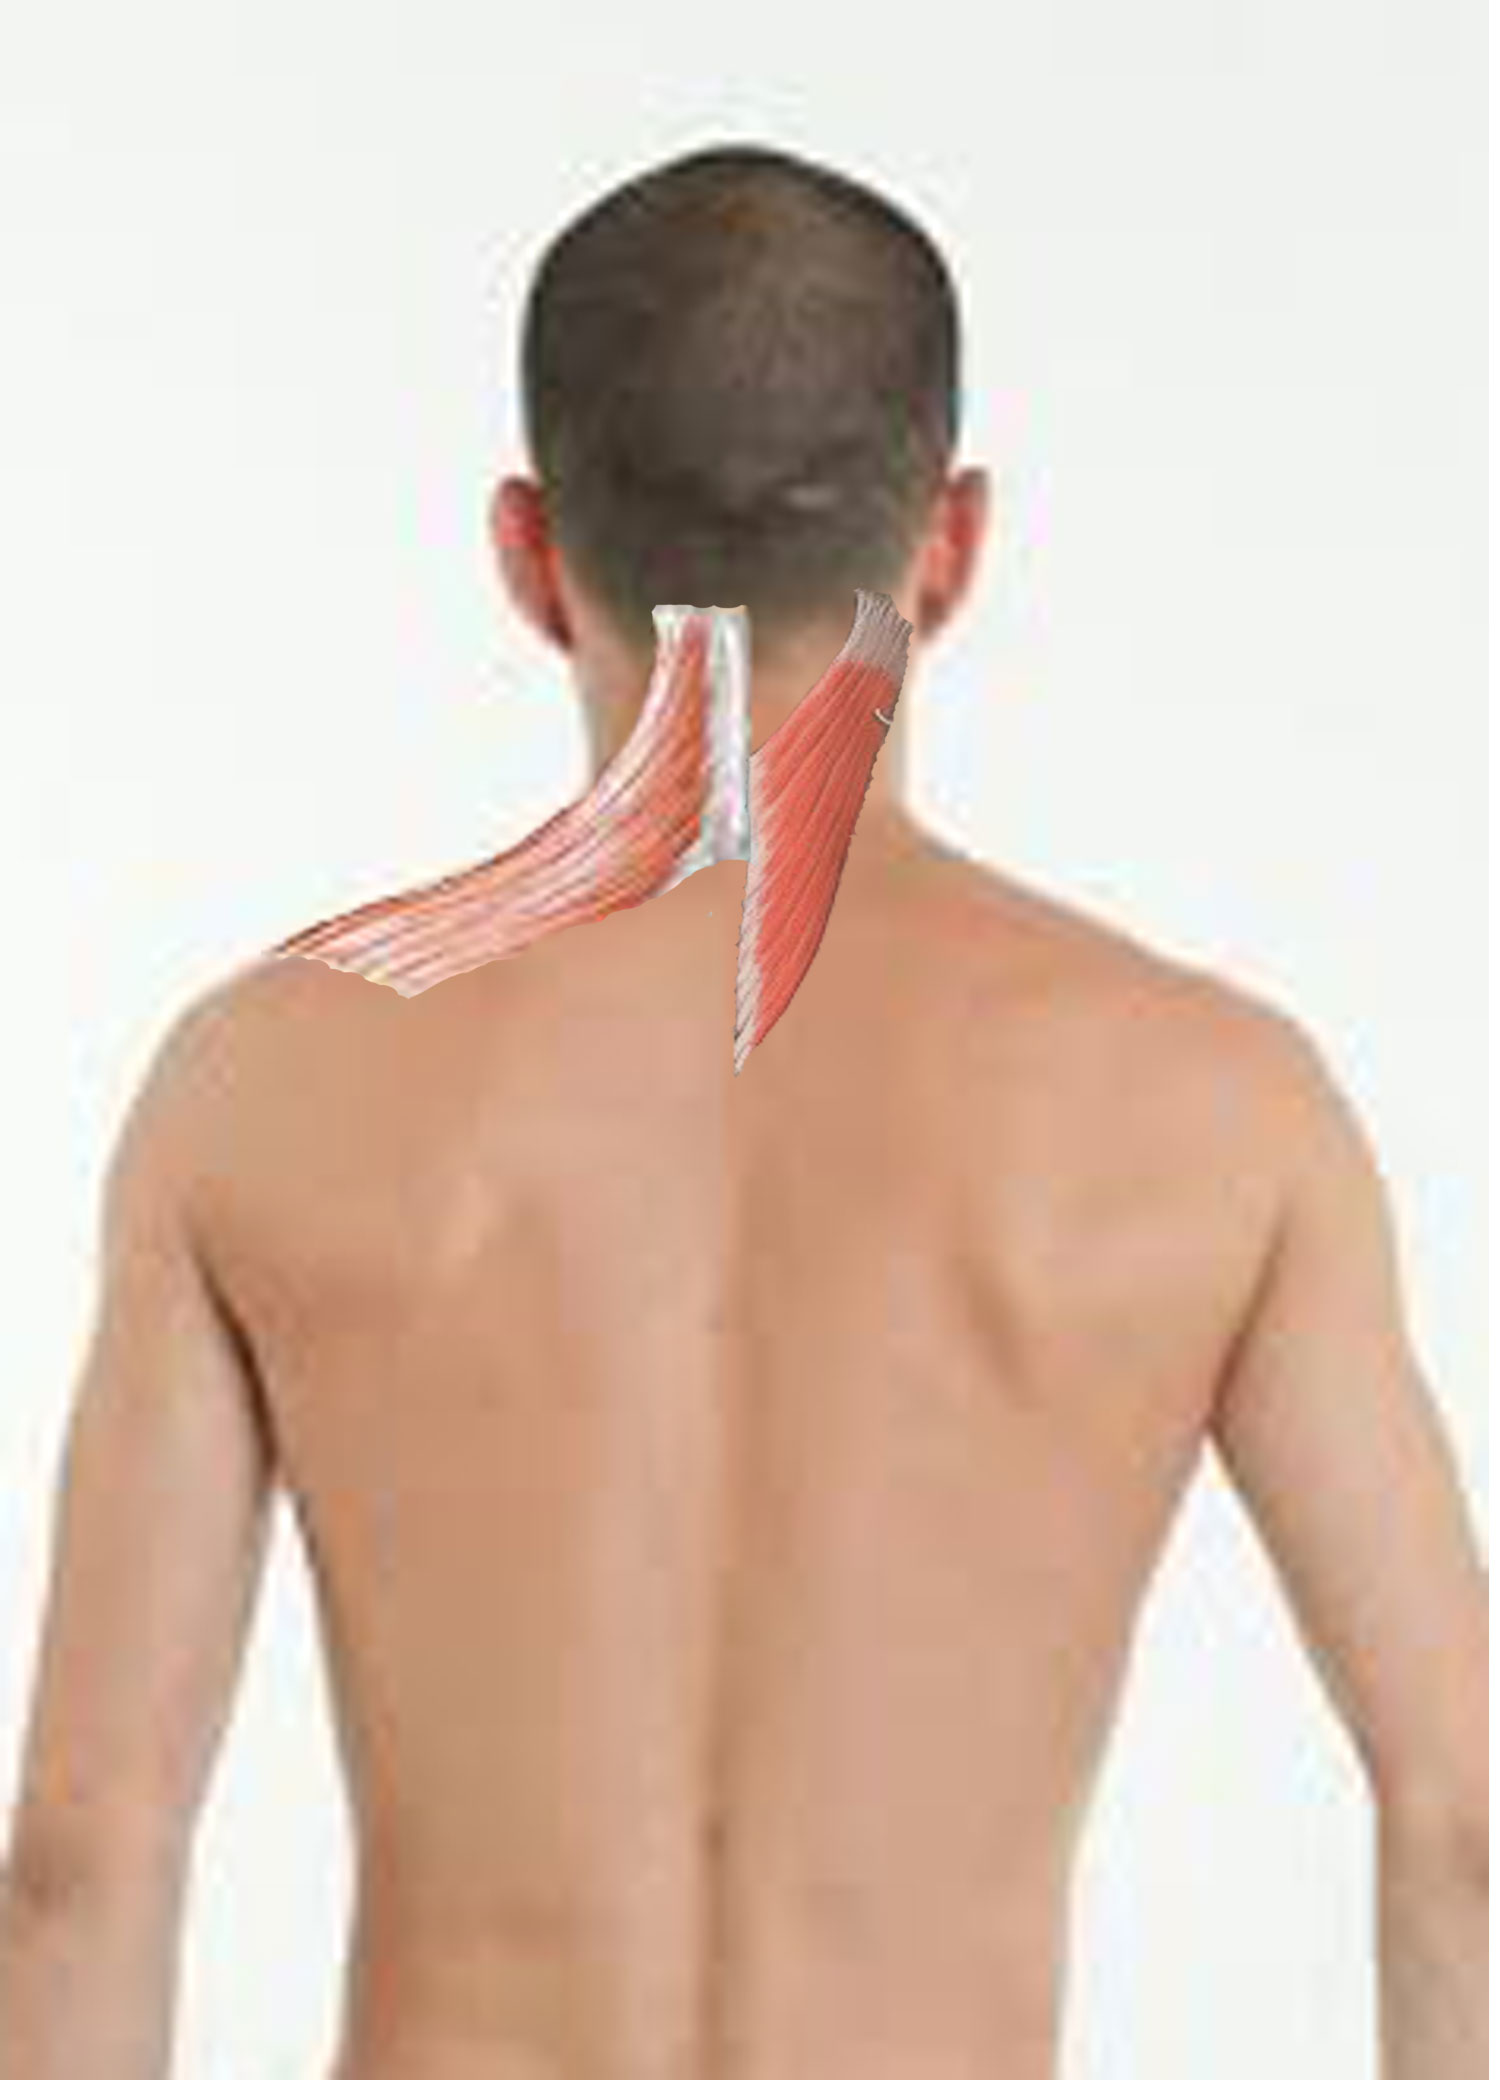 Self massage techniques for neck pain